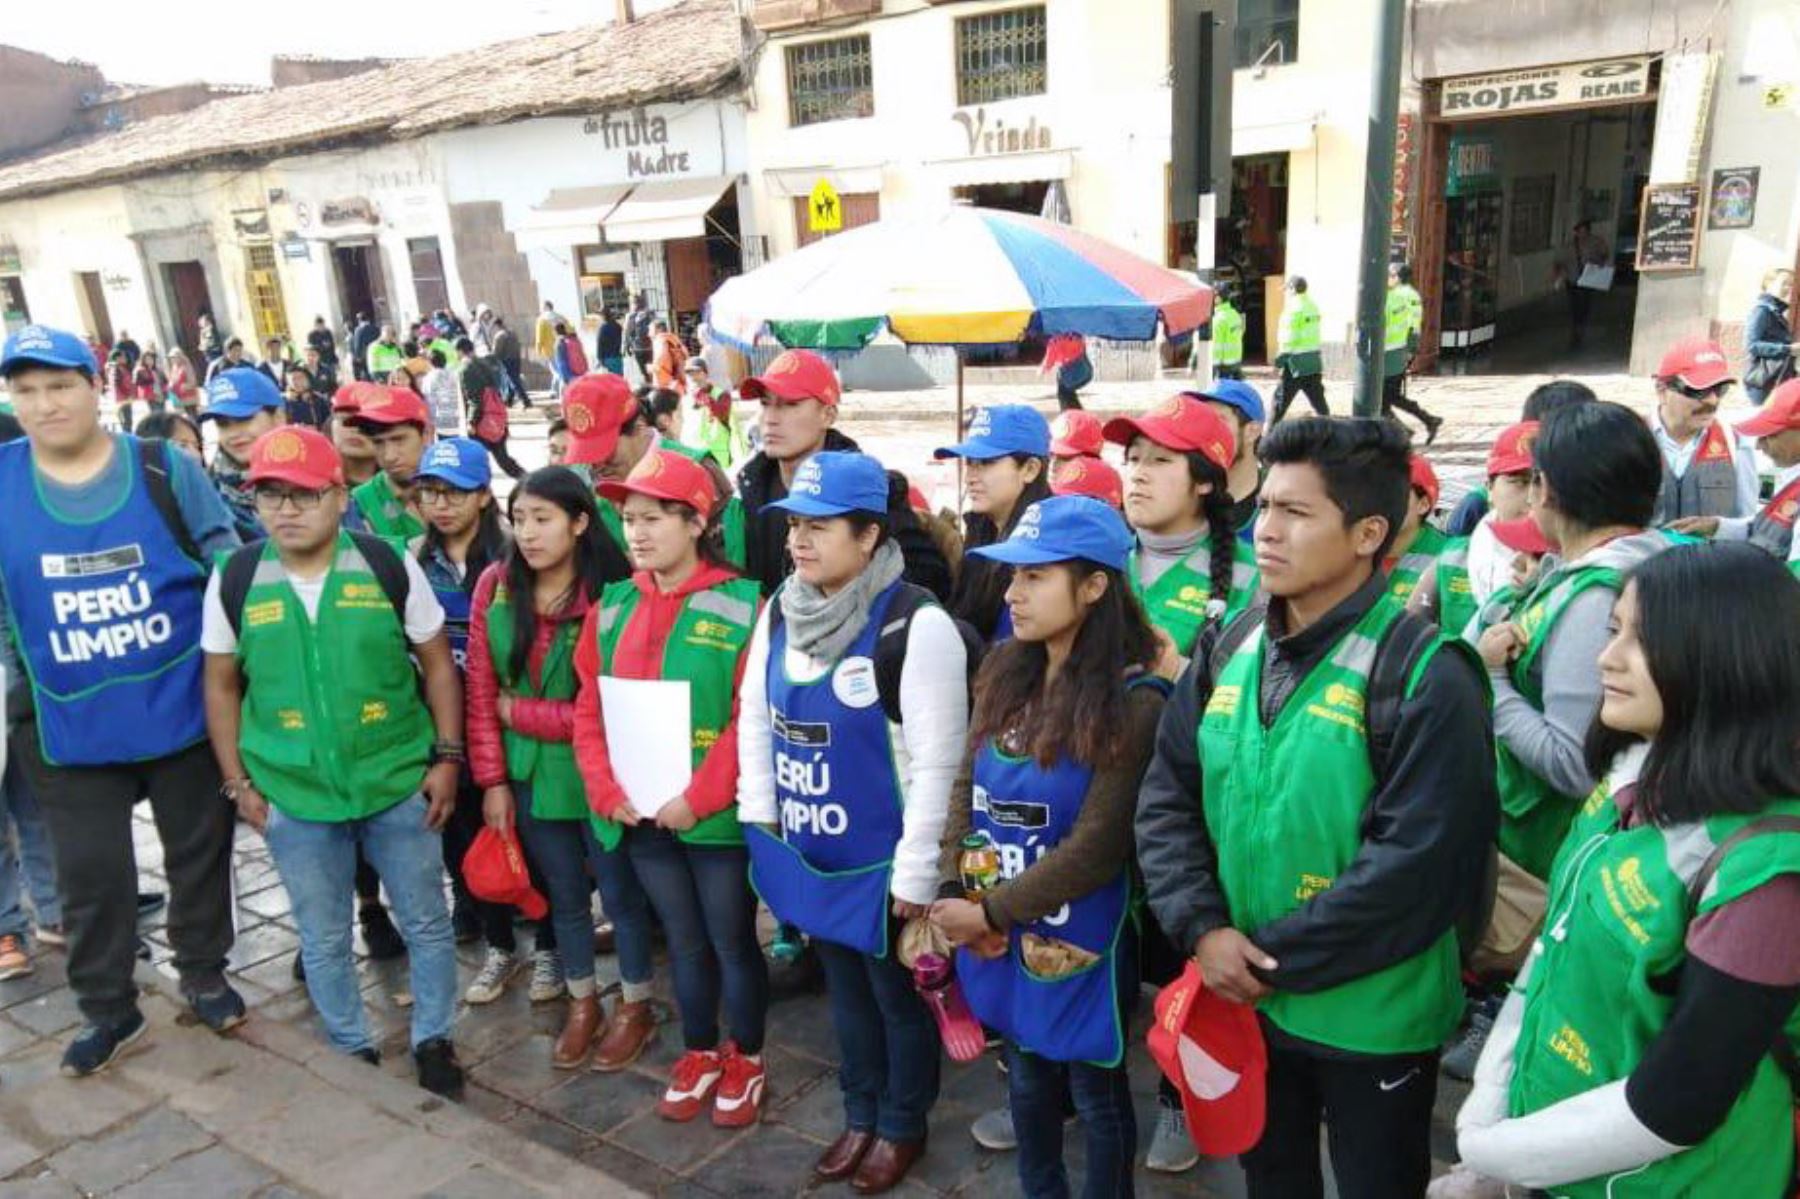 Campaña Perú Limpio dejó calles sin residuos durante Corpus Christi y feria del chiriuchu en Cusco. Foto: ANDINA/Difusión